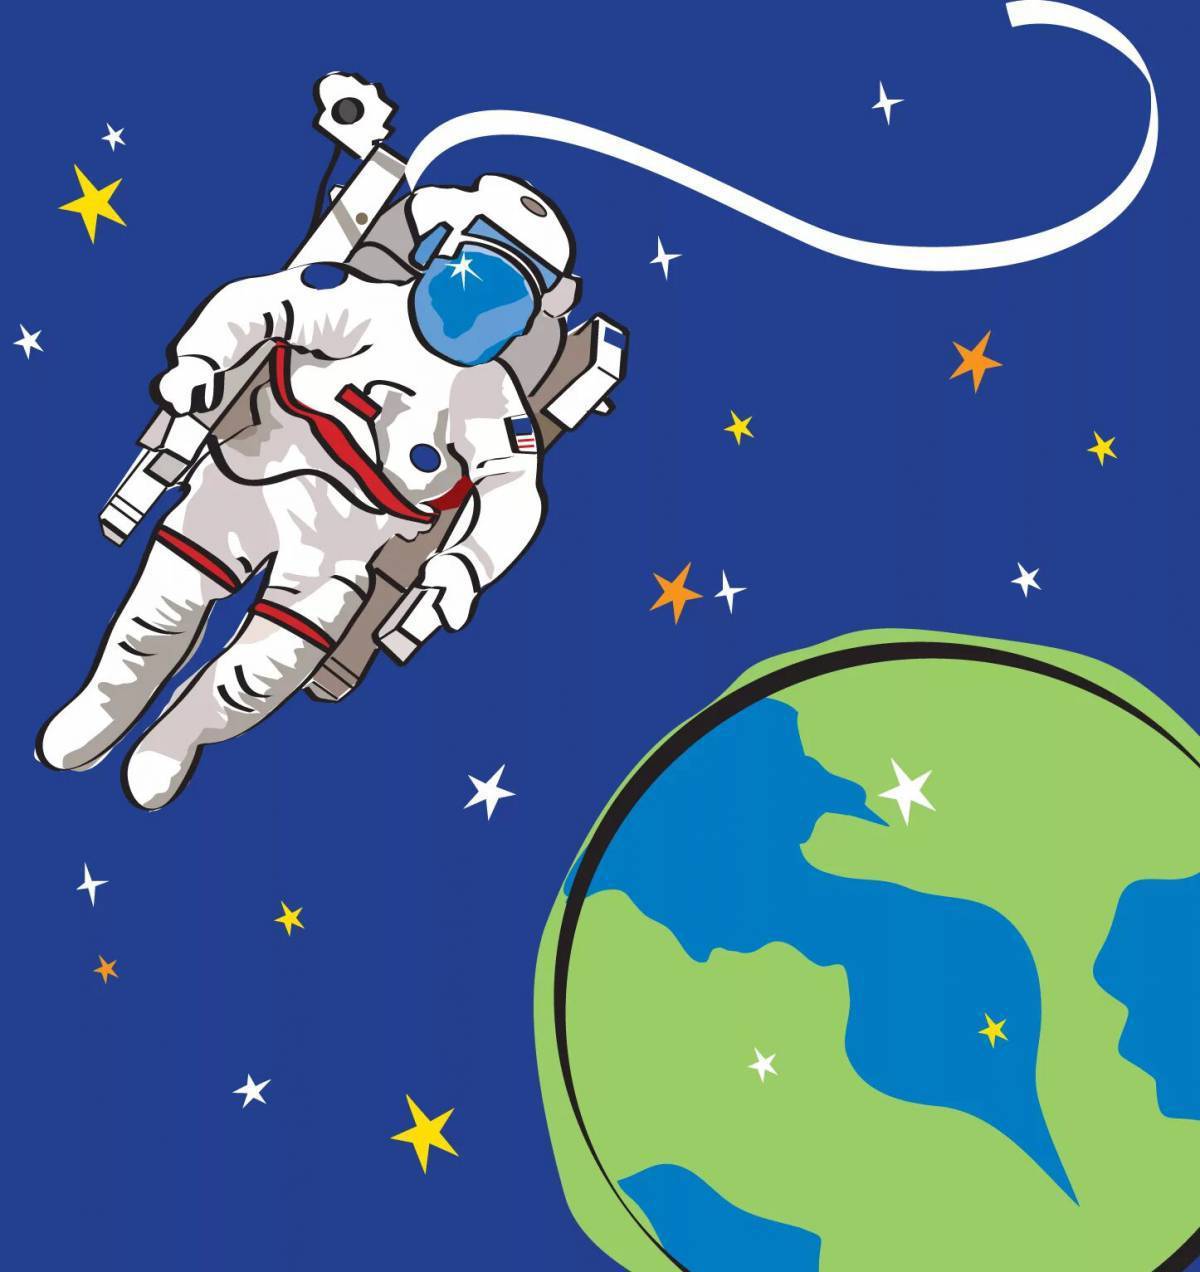 Космонавт картинки для детей дошкольного возраста. Космос картинки для детей. Детям о космосе. Космос для дошкольников. Космические картинки для детей.